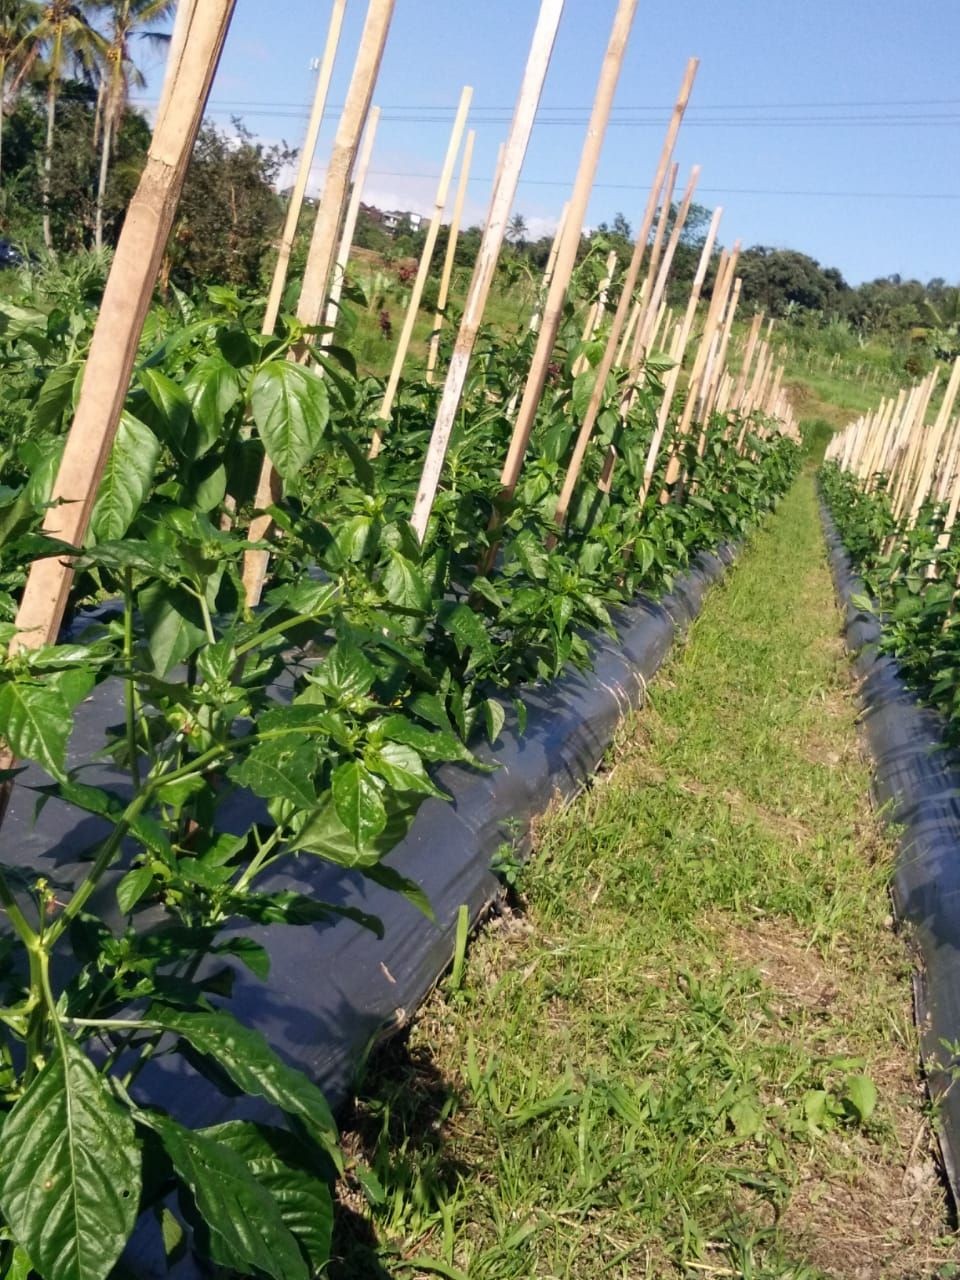 Petani Jatiluwih Bali Jual Sayur Pakai Sistem Petik Sendiri di Kebun